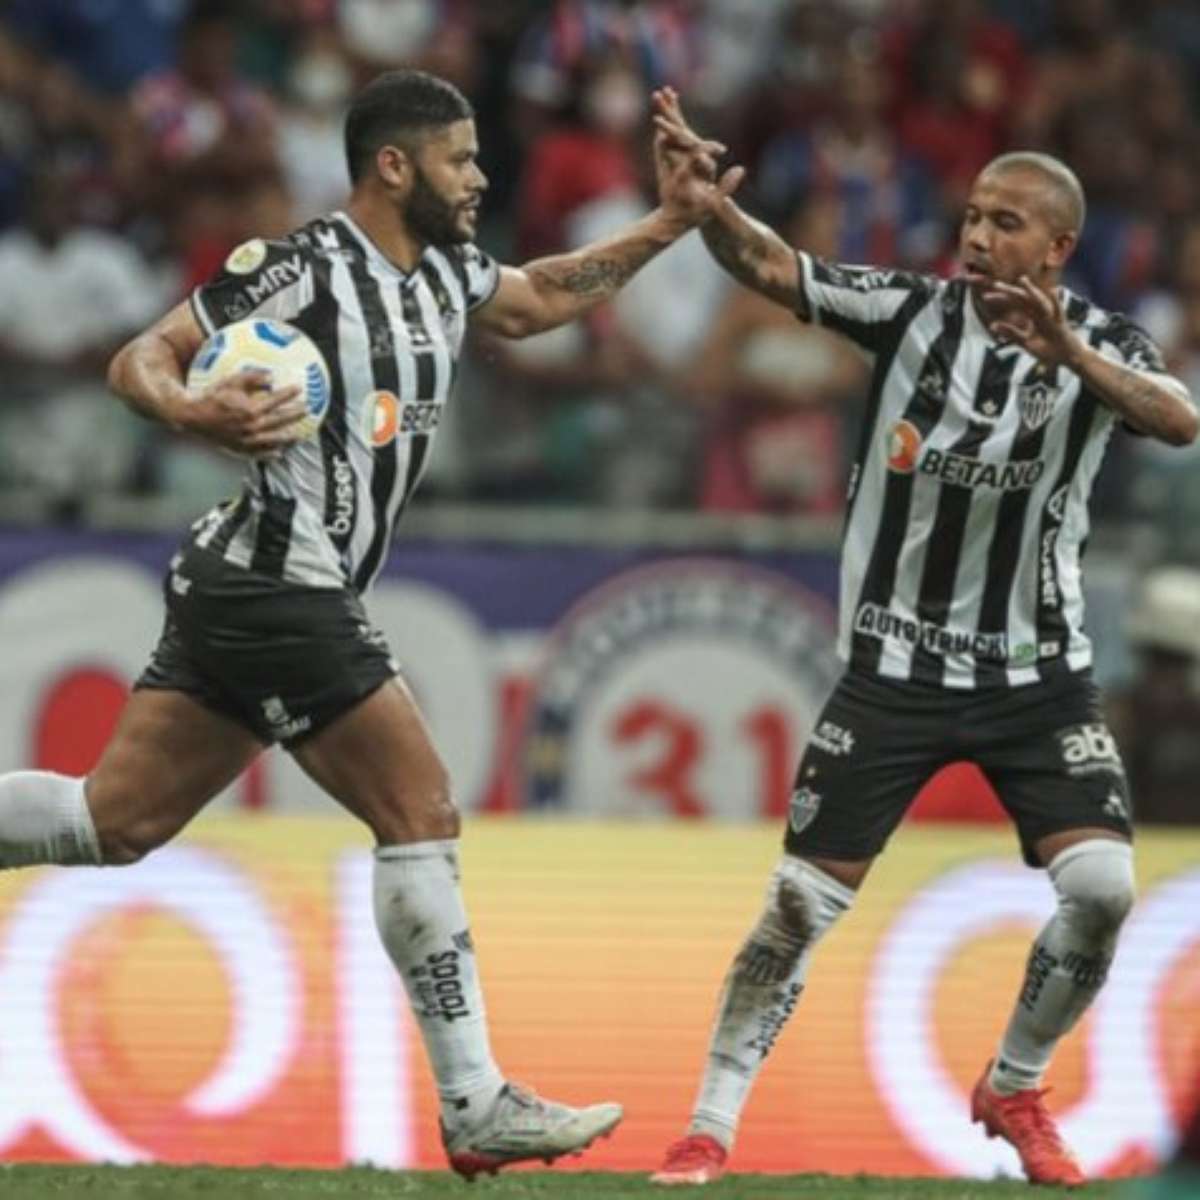 Jogadores exaltam dia histórico no primeiro jogo na Arena MRV – Clube  Atlético Mineiro